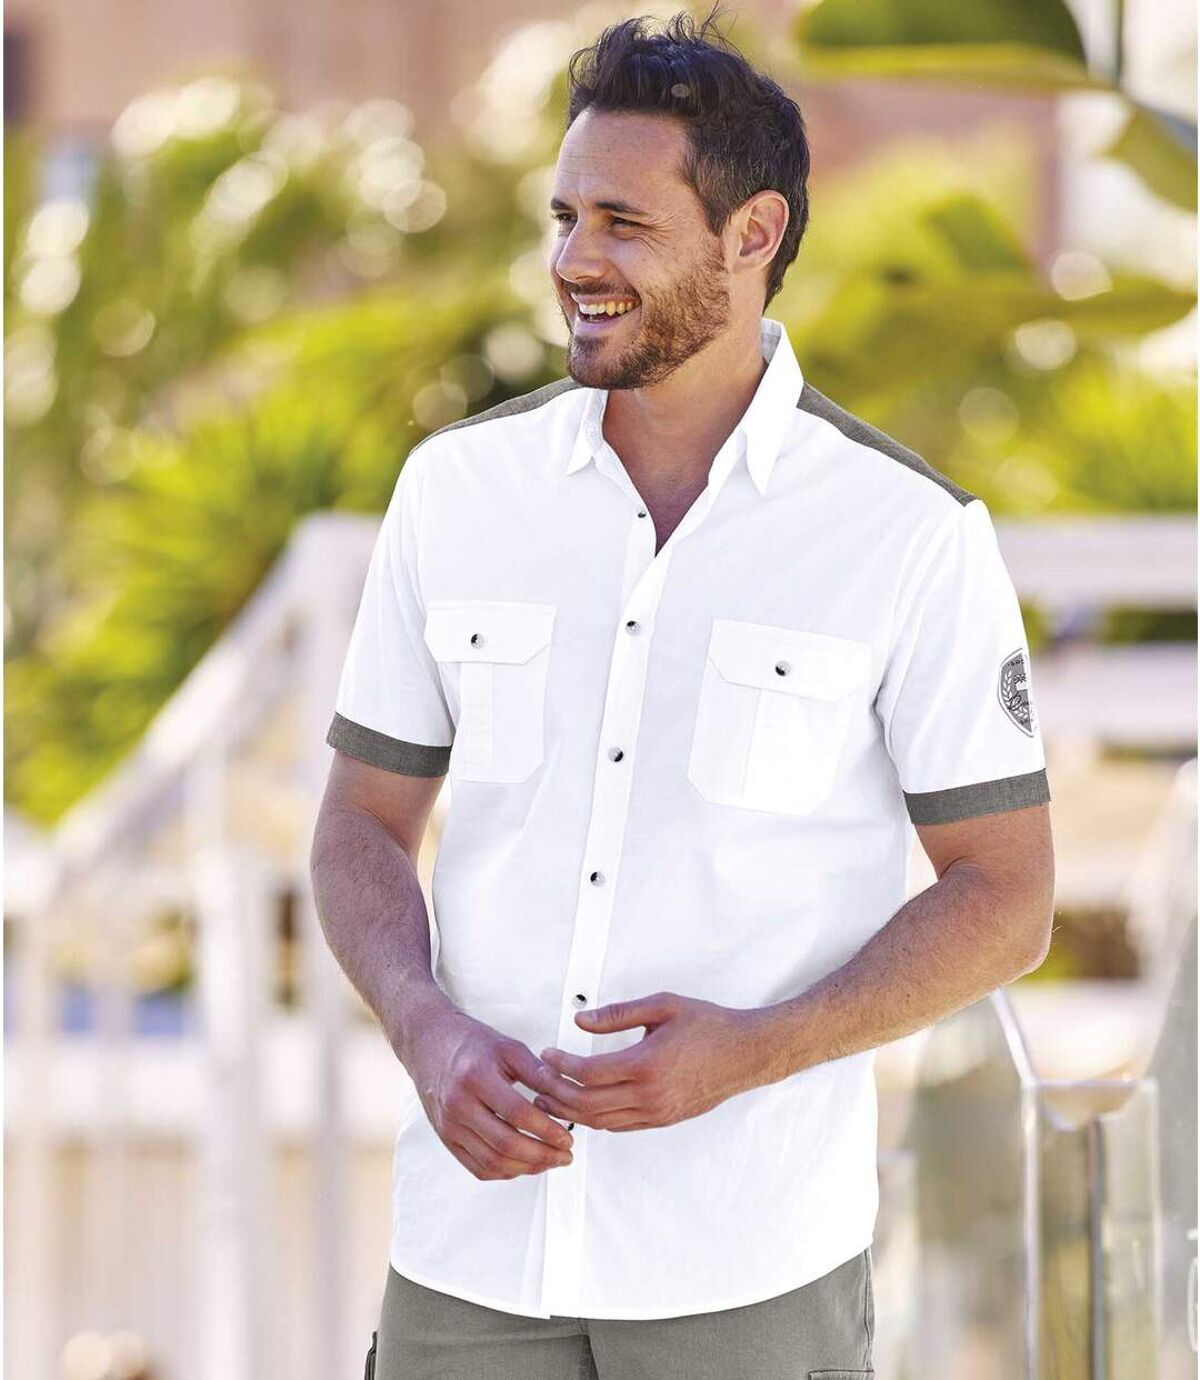 Men's White Aviator-Style Shirt Atlas For Men